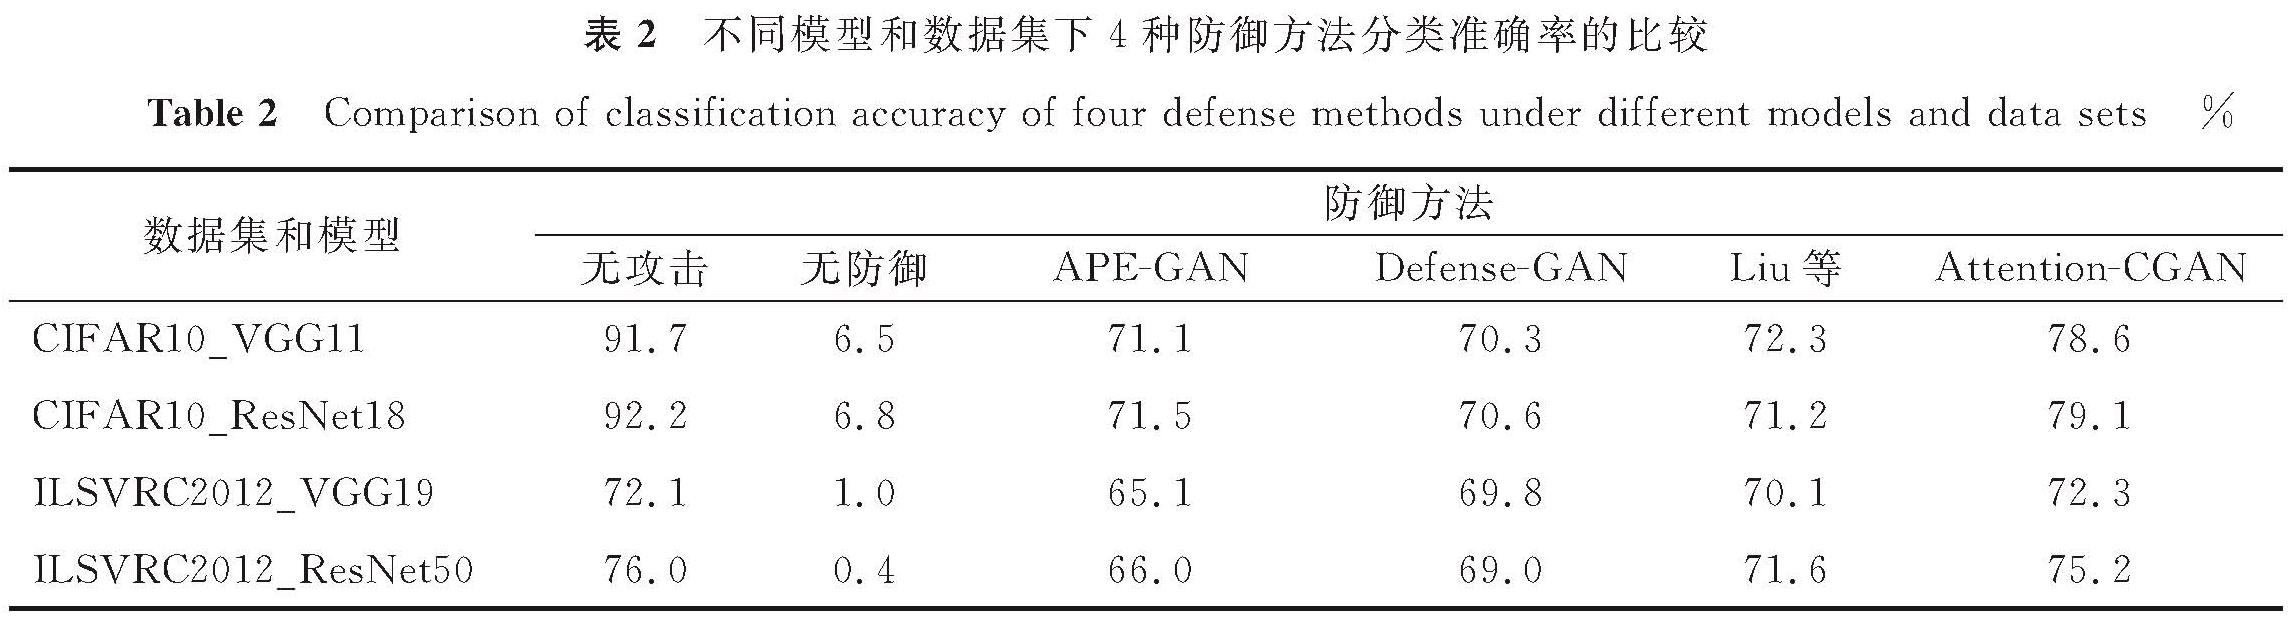 表2 不同模型和数据集下4种防御方法分类准确率的比较<br/>Table 2 Comparison of classification accuracy of four defense methods under different models and data sets%